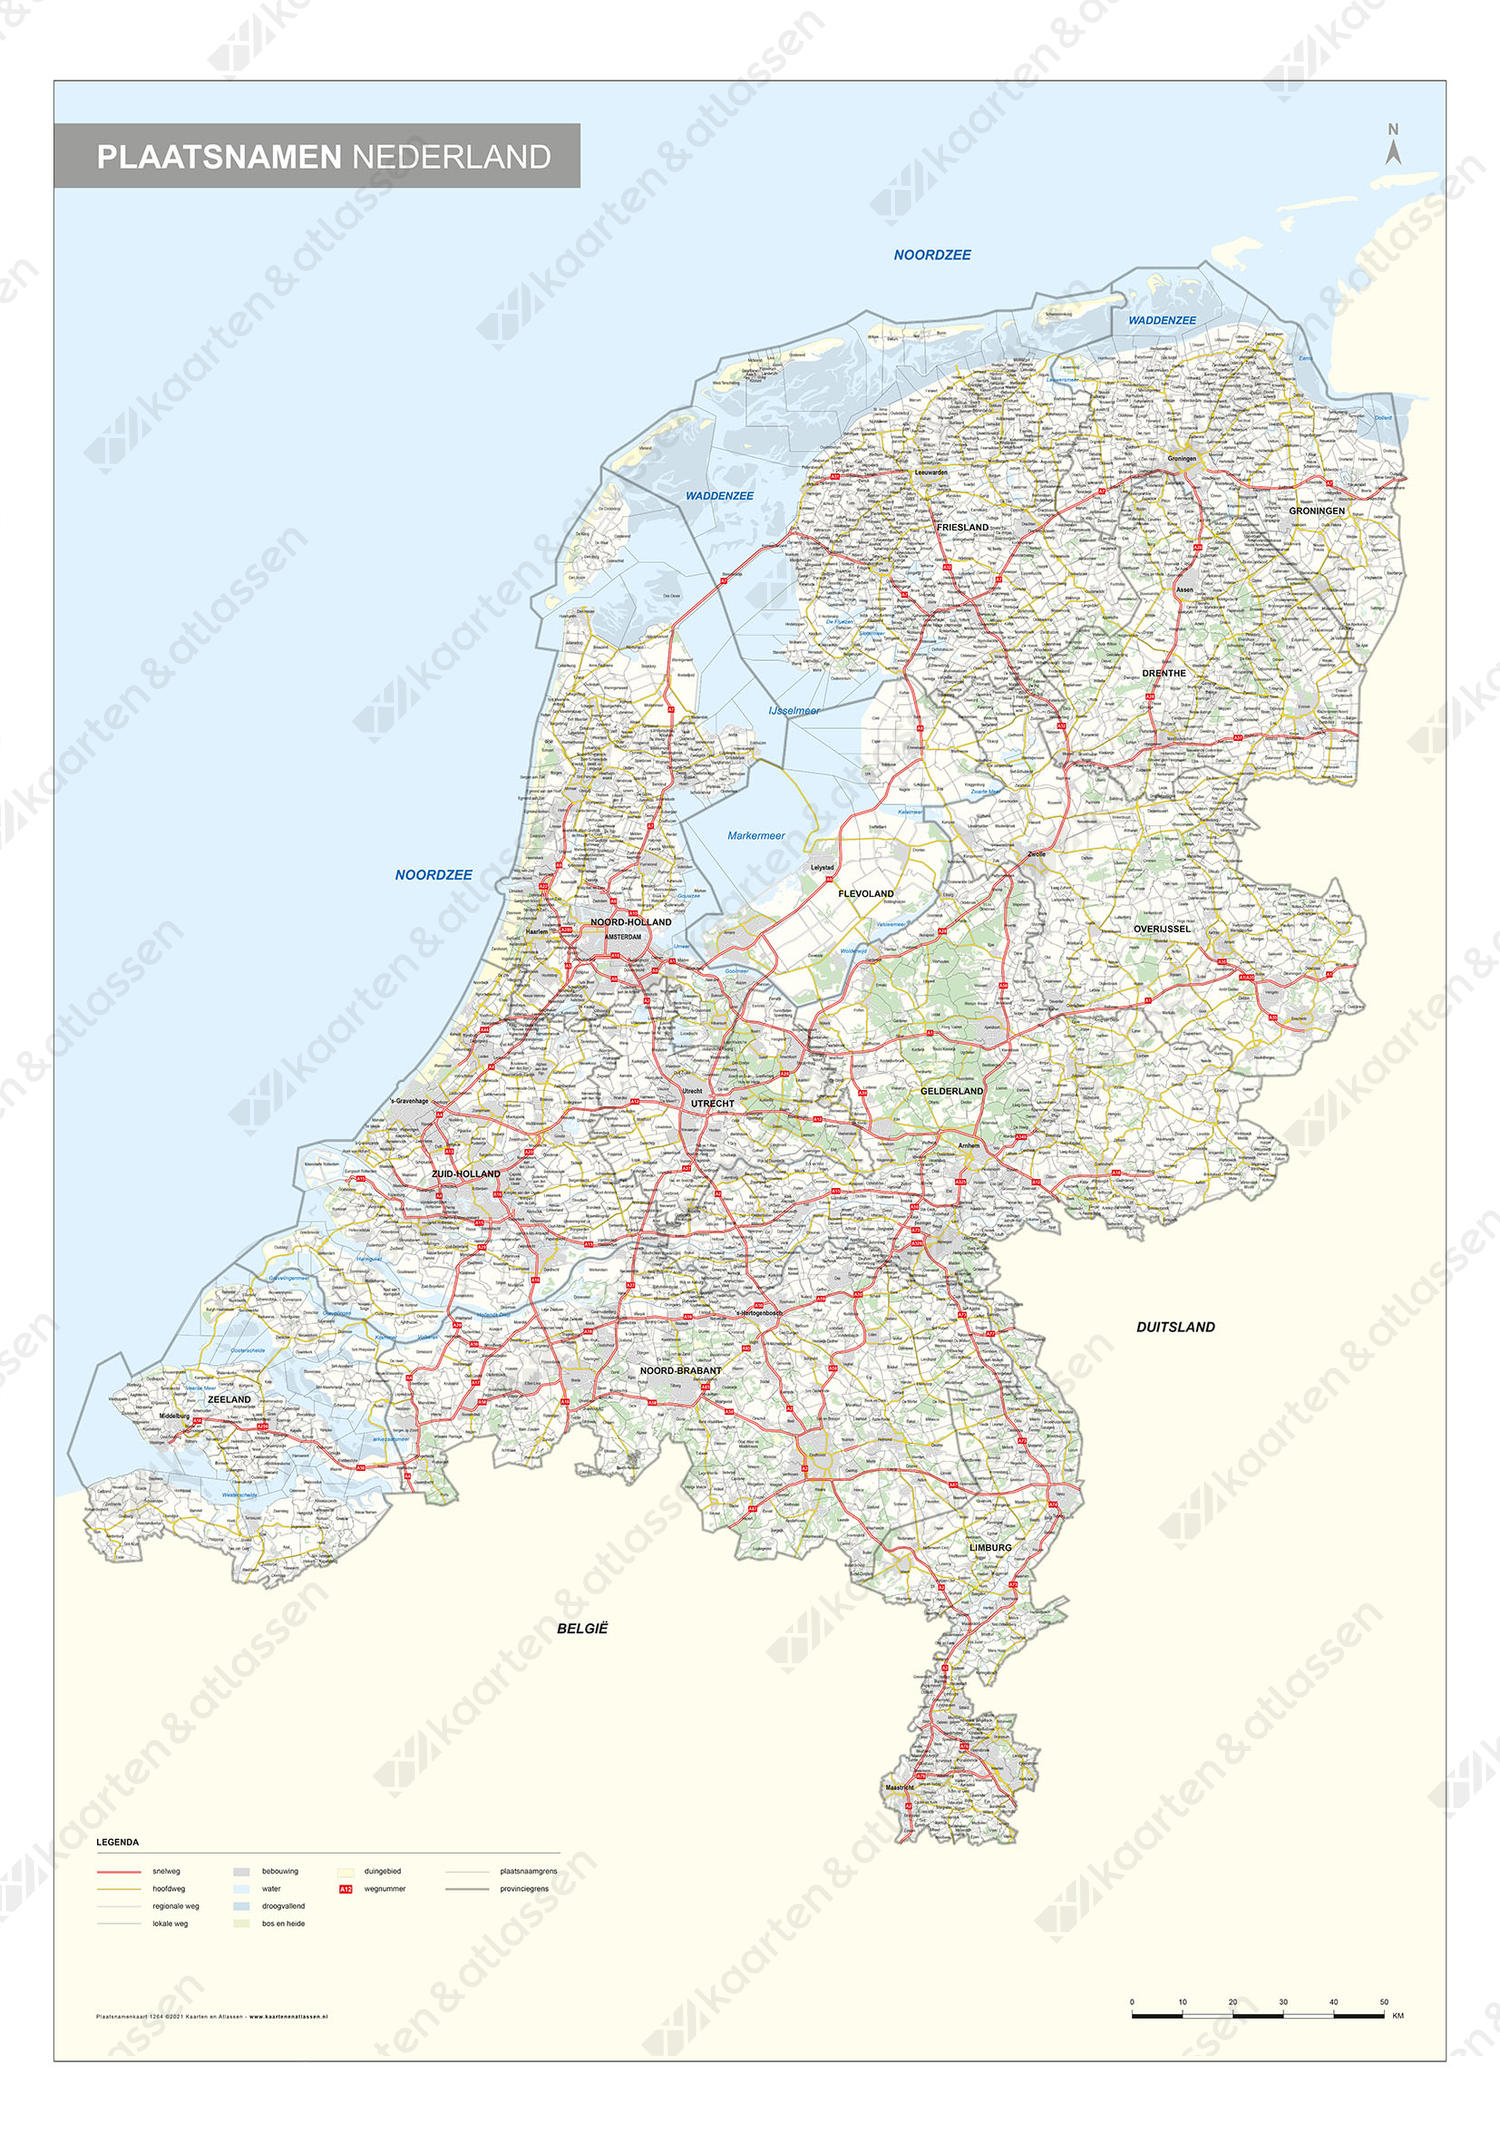 Digitale Plaatsnamenkaart  Nederland met wegen